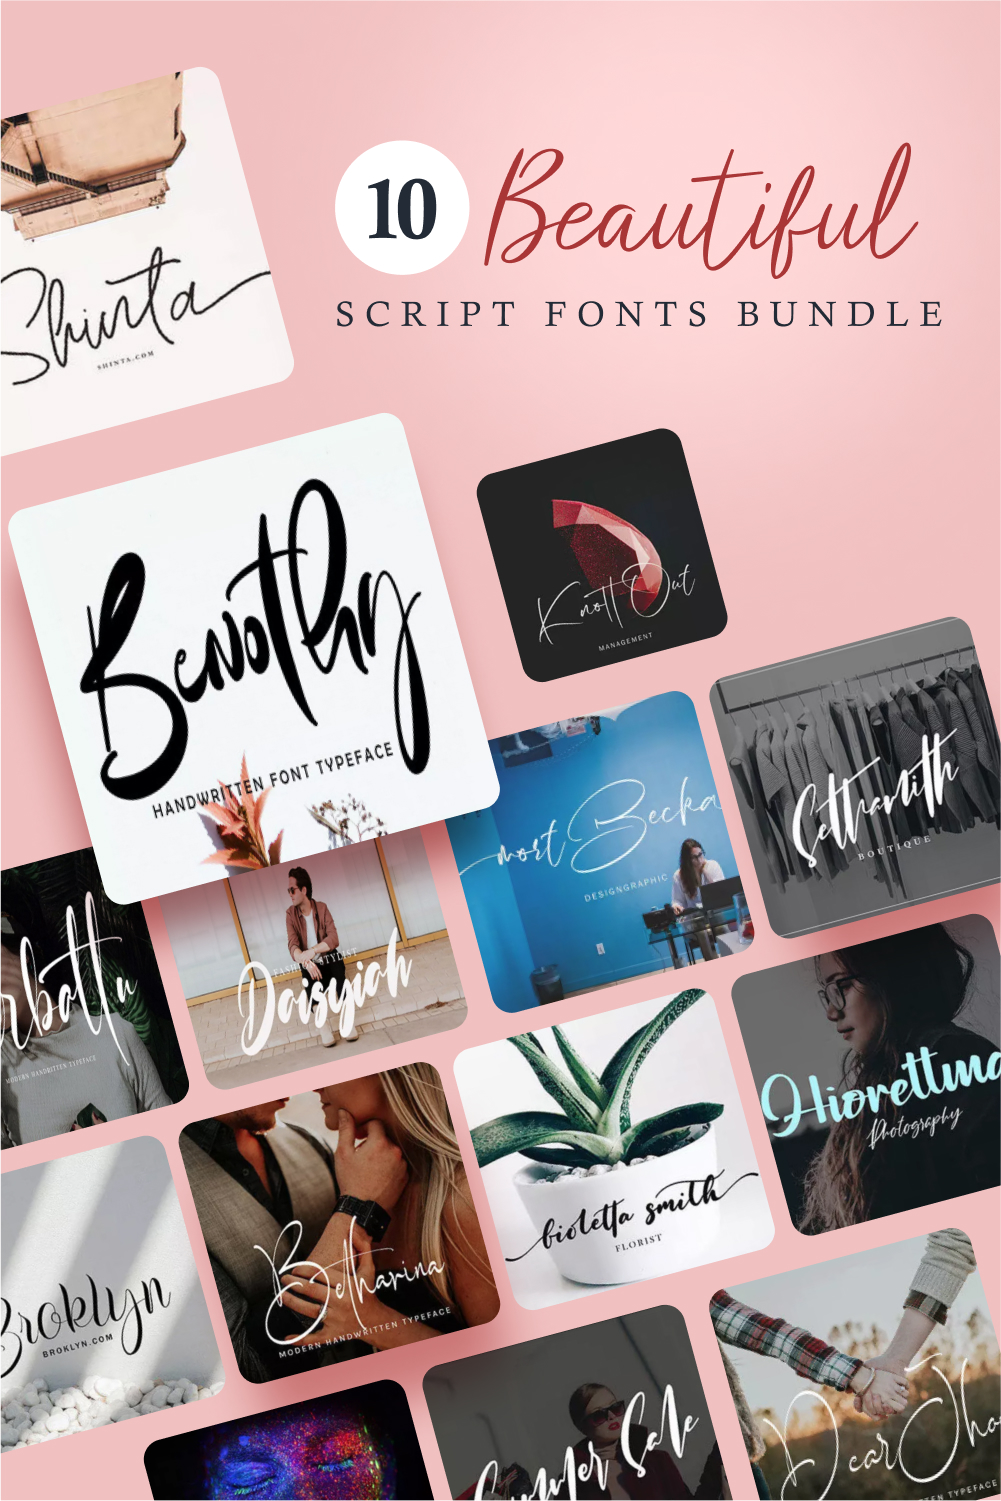 Beautiful script fonts bundle main Pinterest preview.